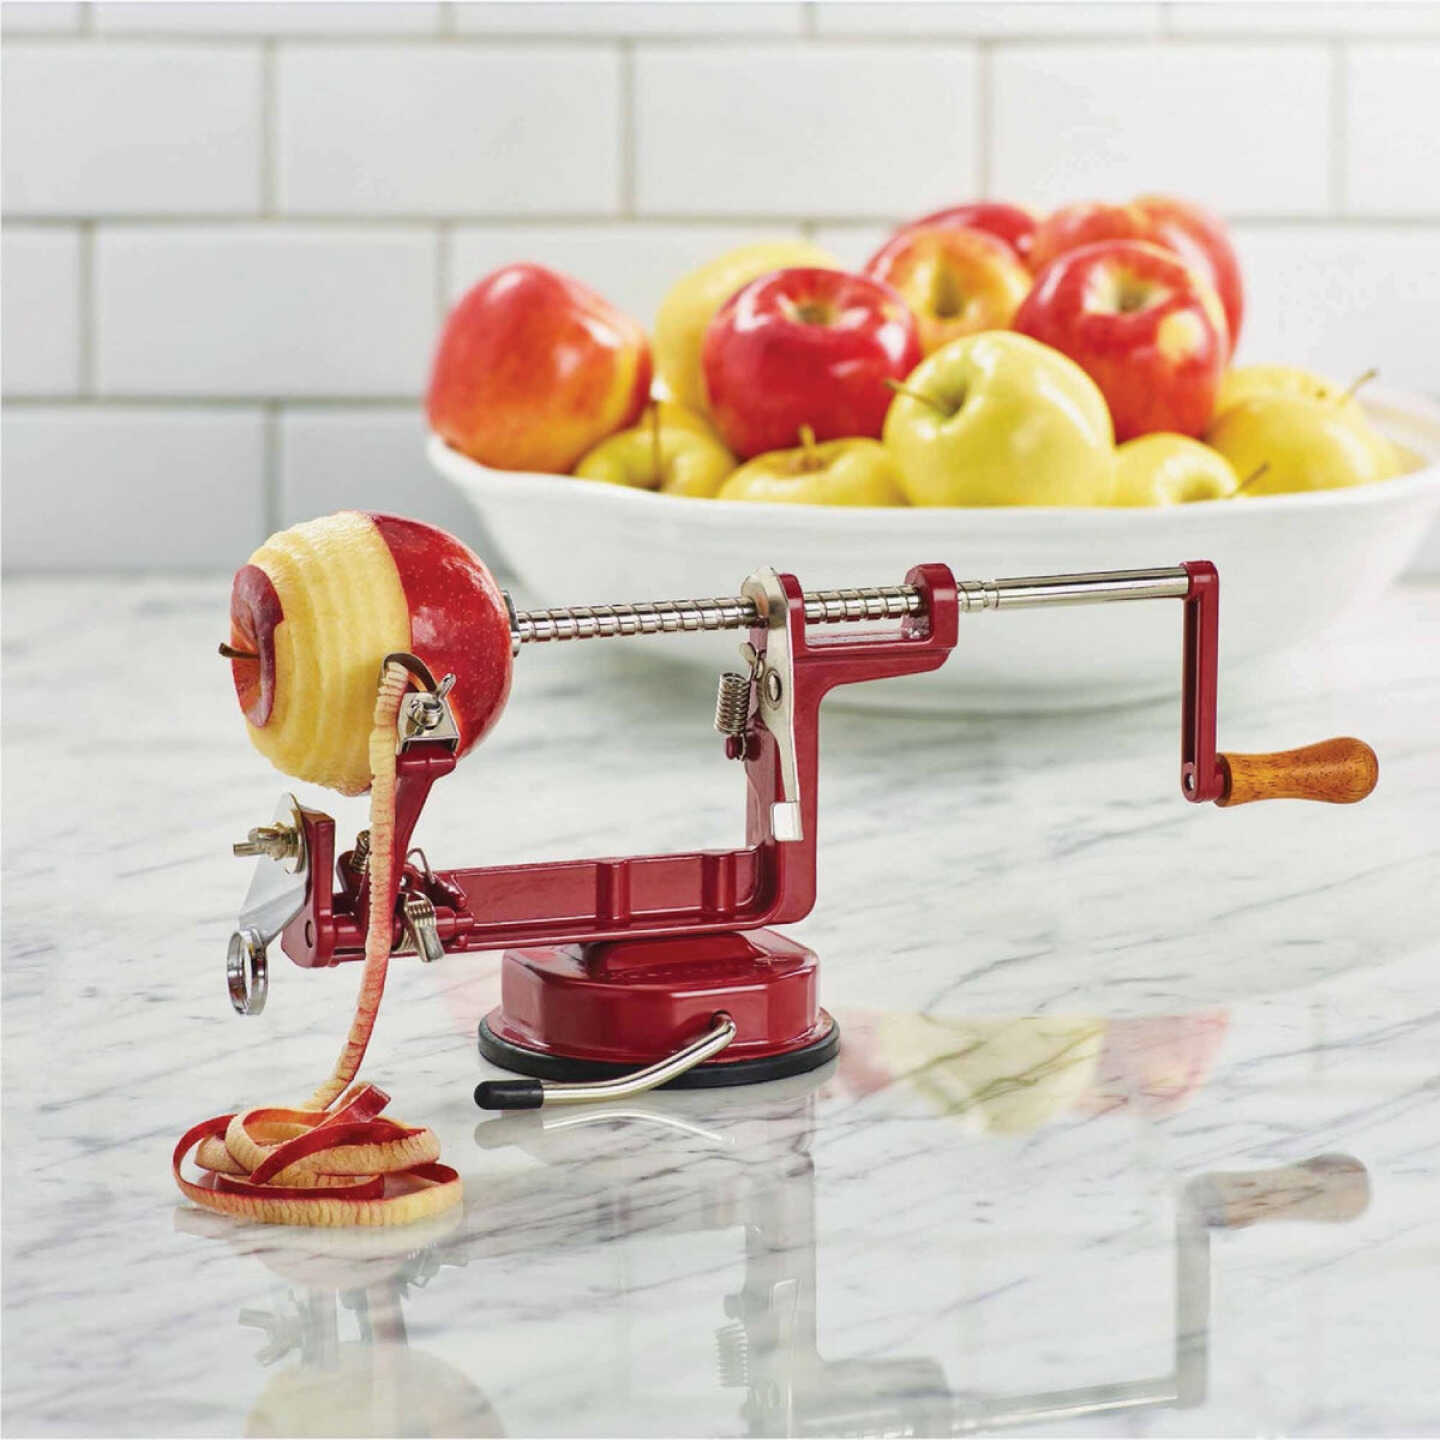 Peel Shaping Potato Scraper Apples Peel Kitchen Fruit Cutter